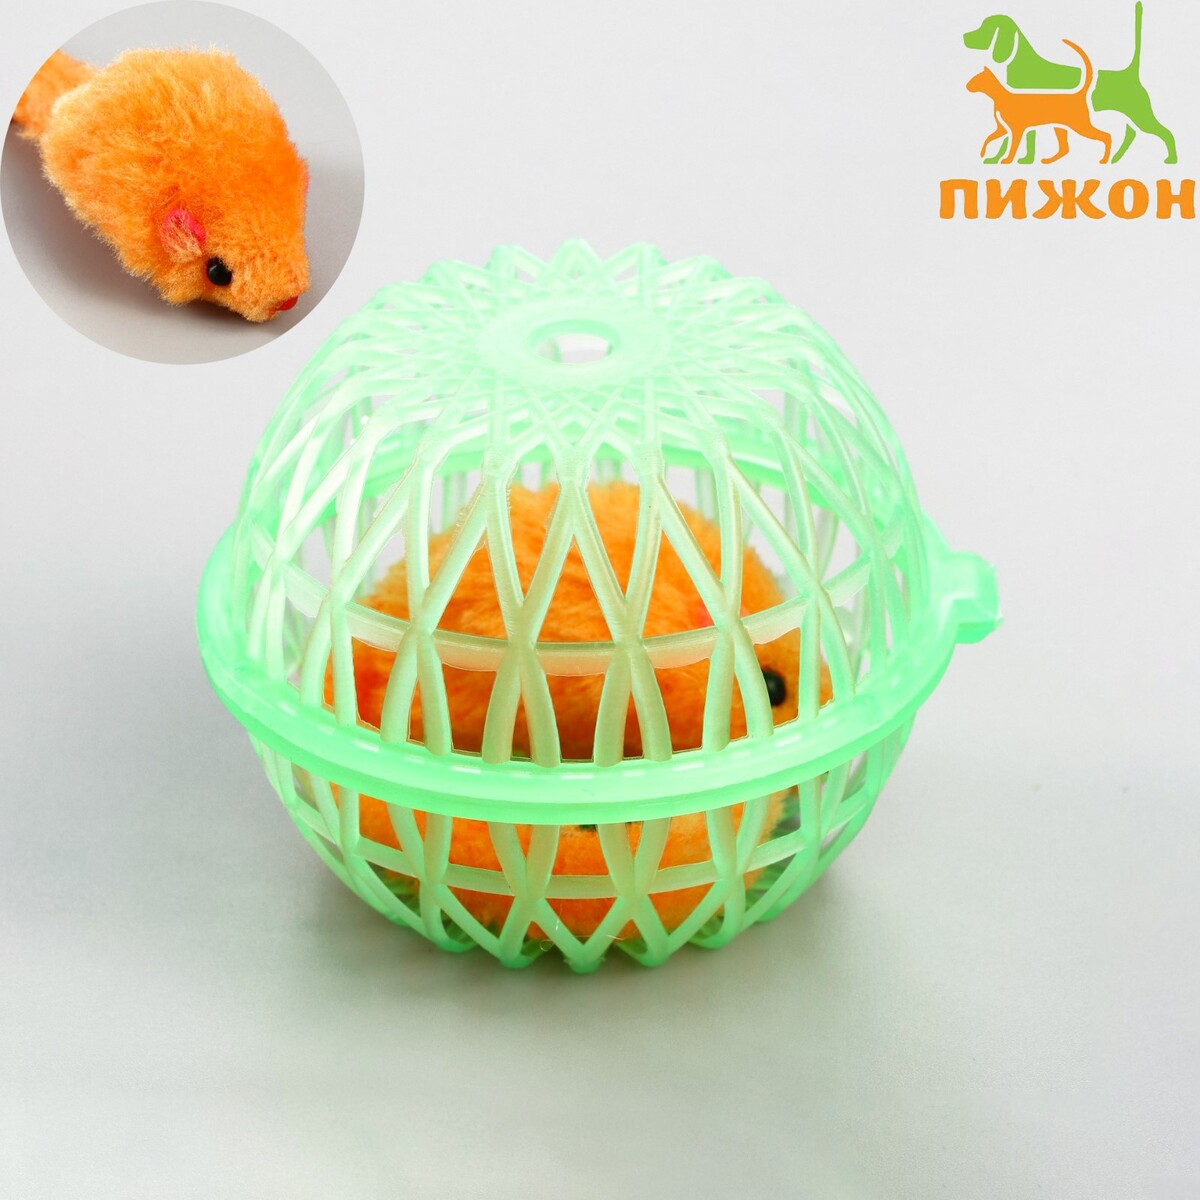 Мышь в пластиковом шаре, 7 х 5 см, зеленый шар/оранжевая мышь